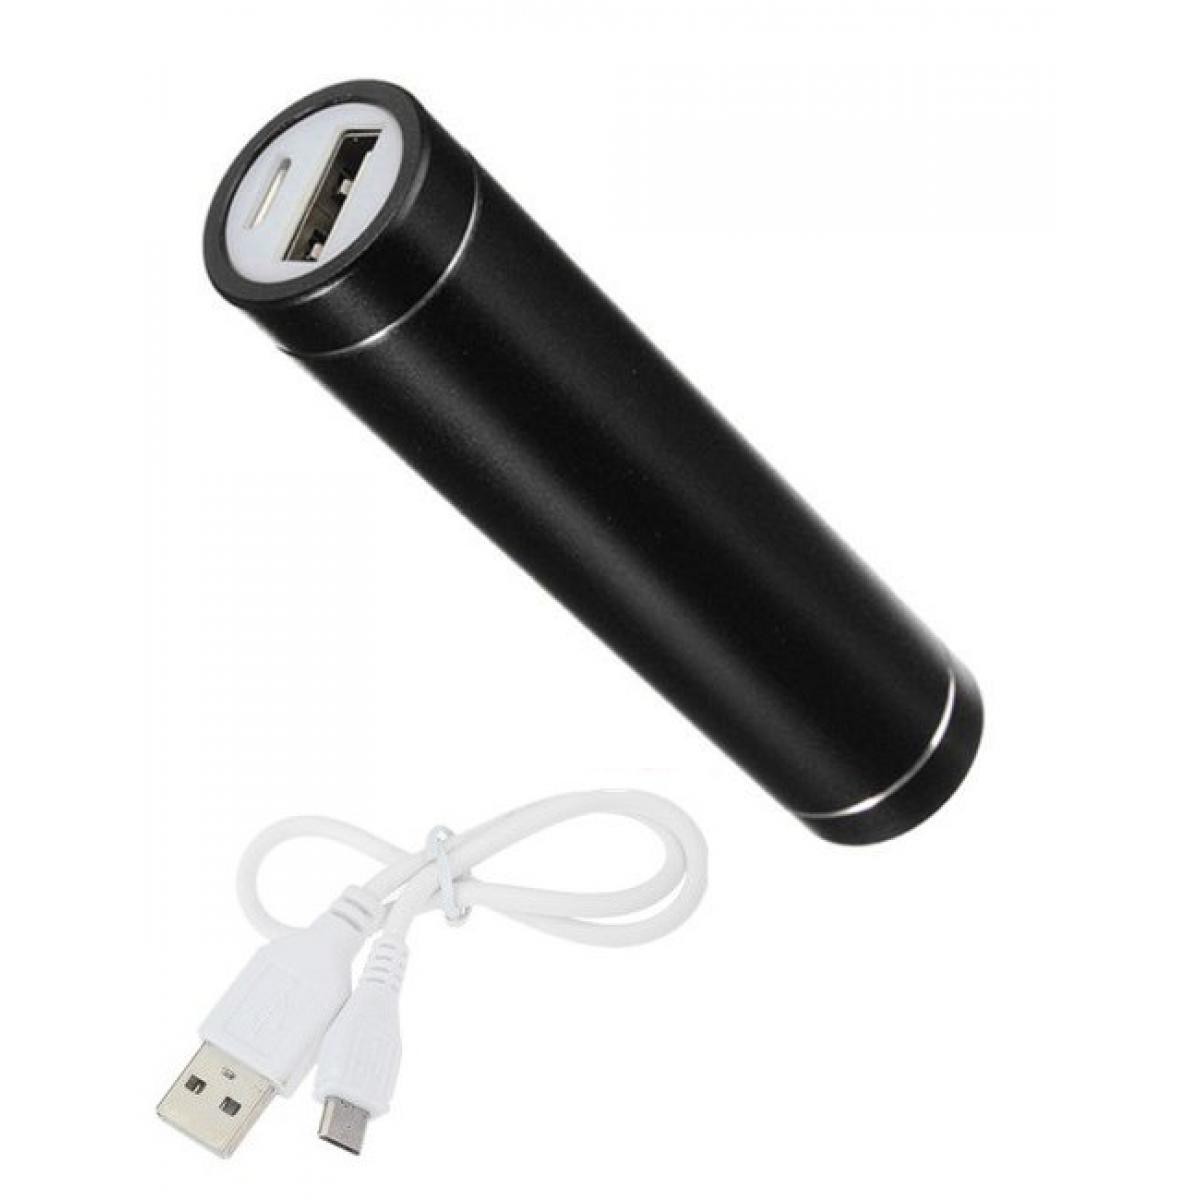 Shot - Batterie Chargeur Externe pour SAMSUNG Galaxy Note 20 Ultra Power Bank 2600mAh avec Cable USB/Mirco USB Secours Teleph (NOIR) - Chargeur secteur téléphone